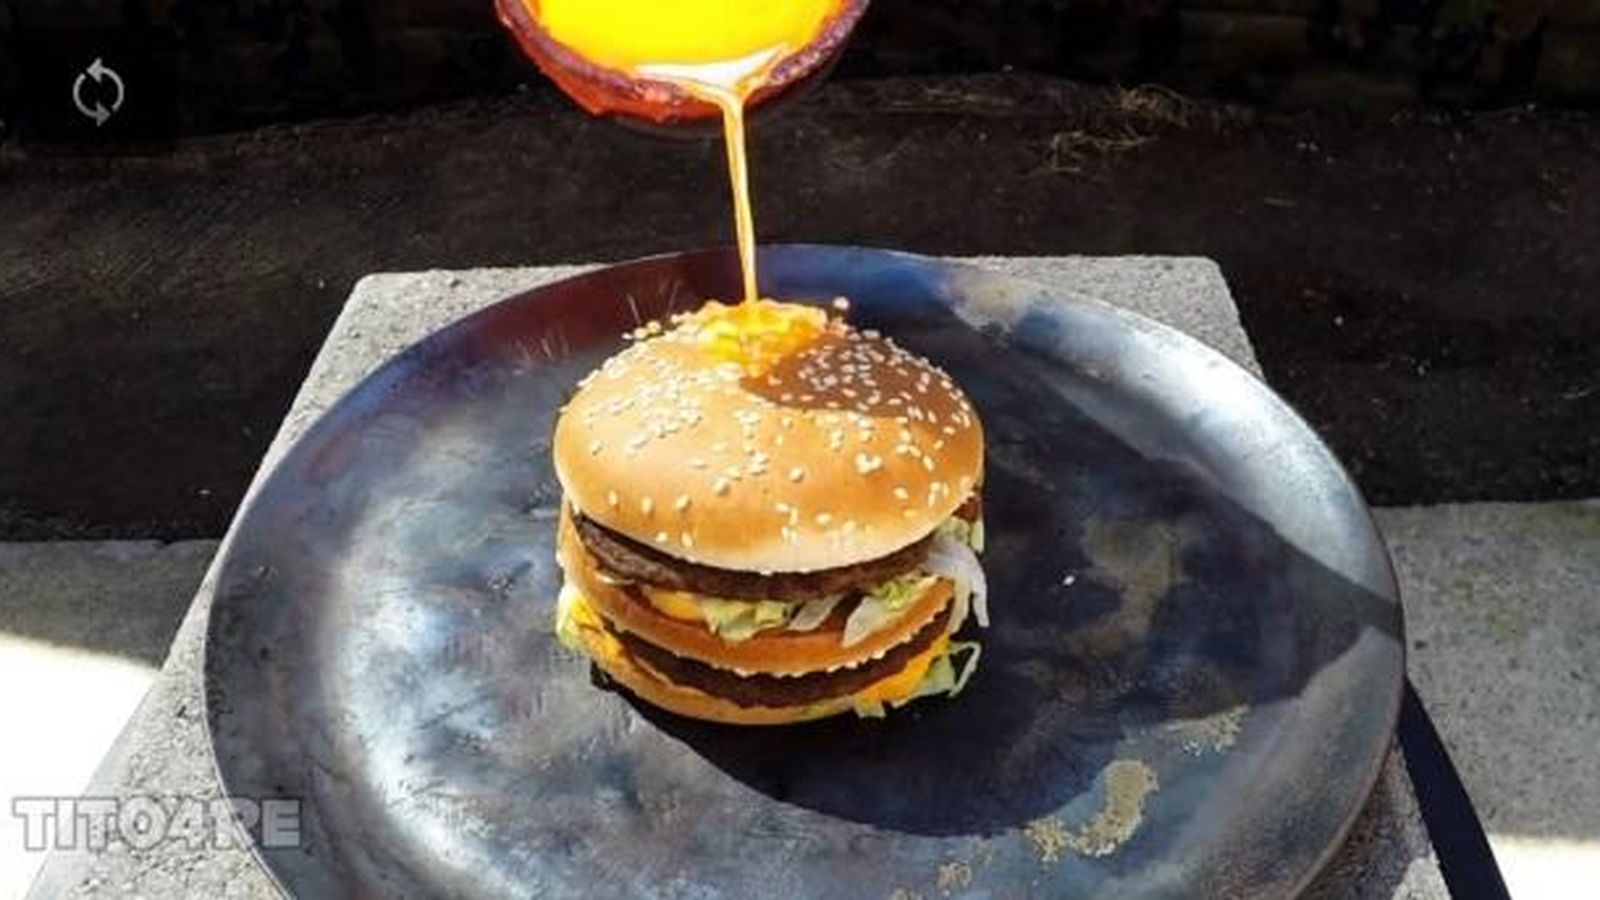 Foto: El Big Mac, intacto, tras echarle cobre fundido (Tito4ore)